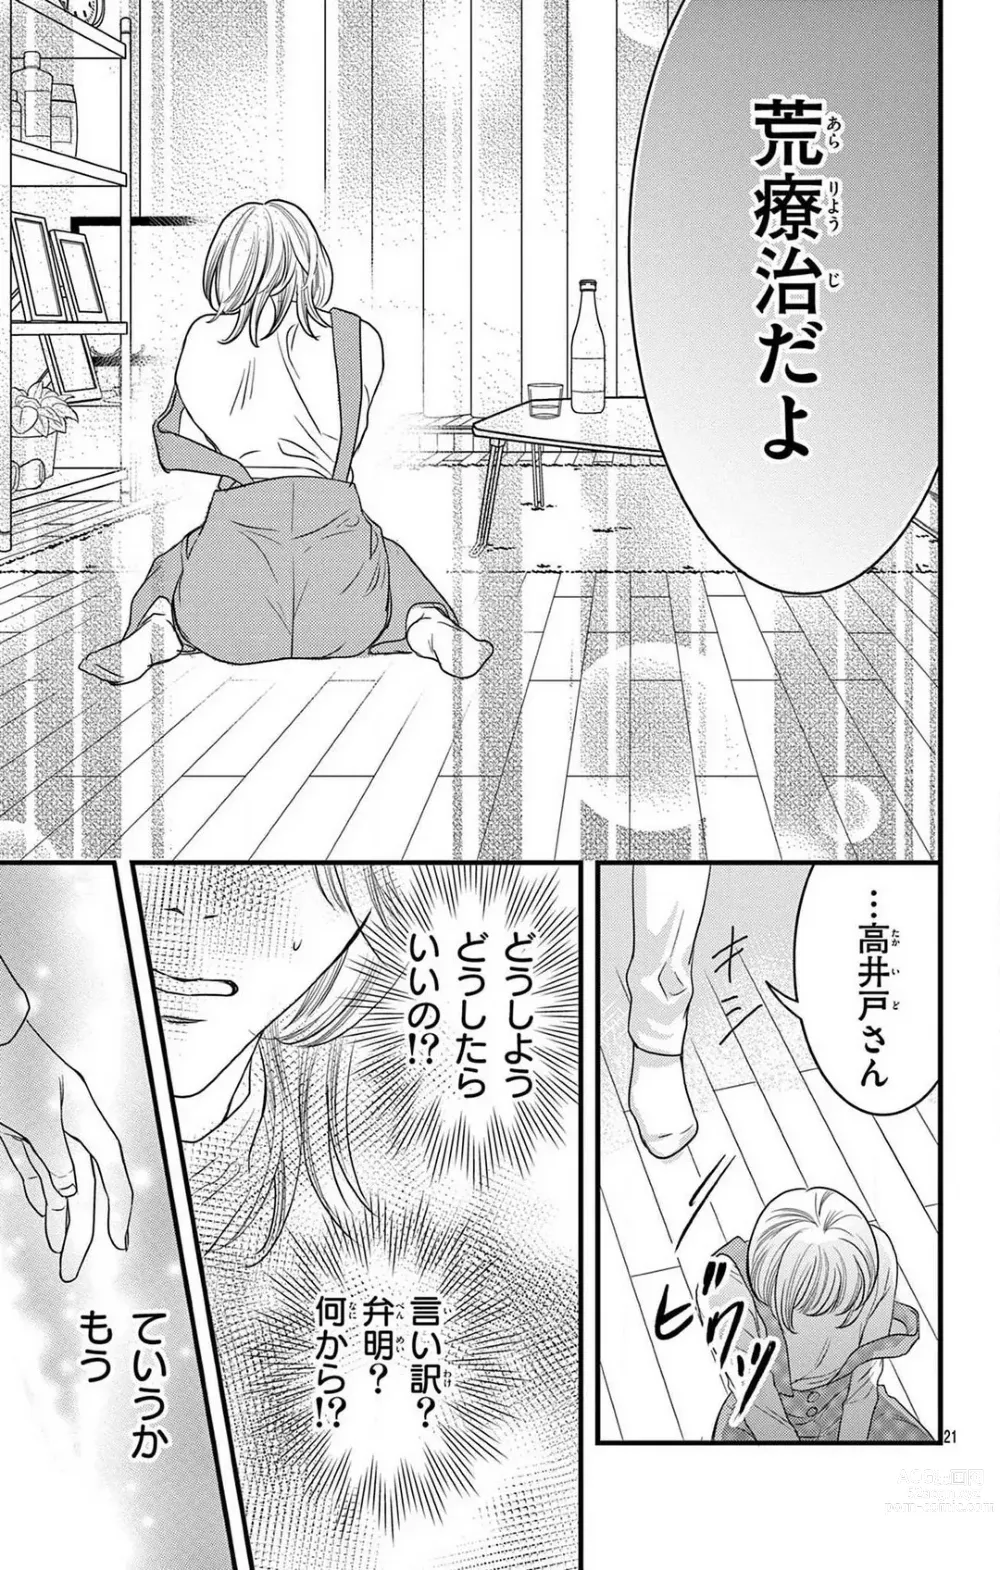 Page 227 of manga Kuzu wa Kuzu Demo Kao ga ii Kuzu 1-7